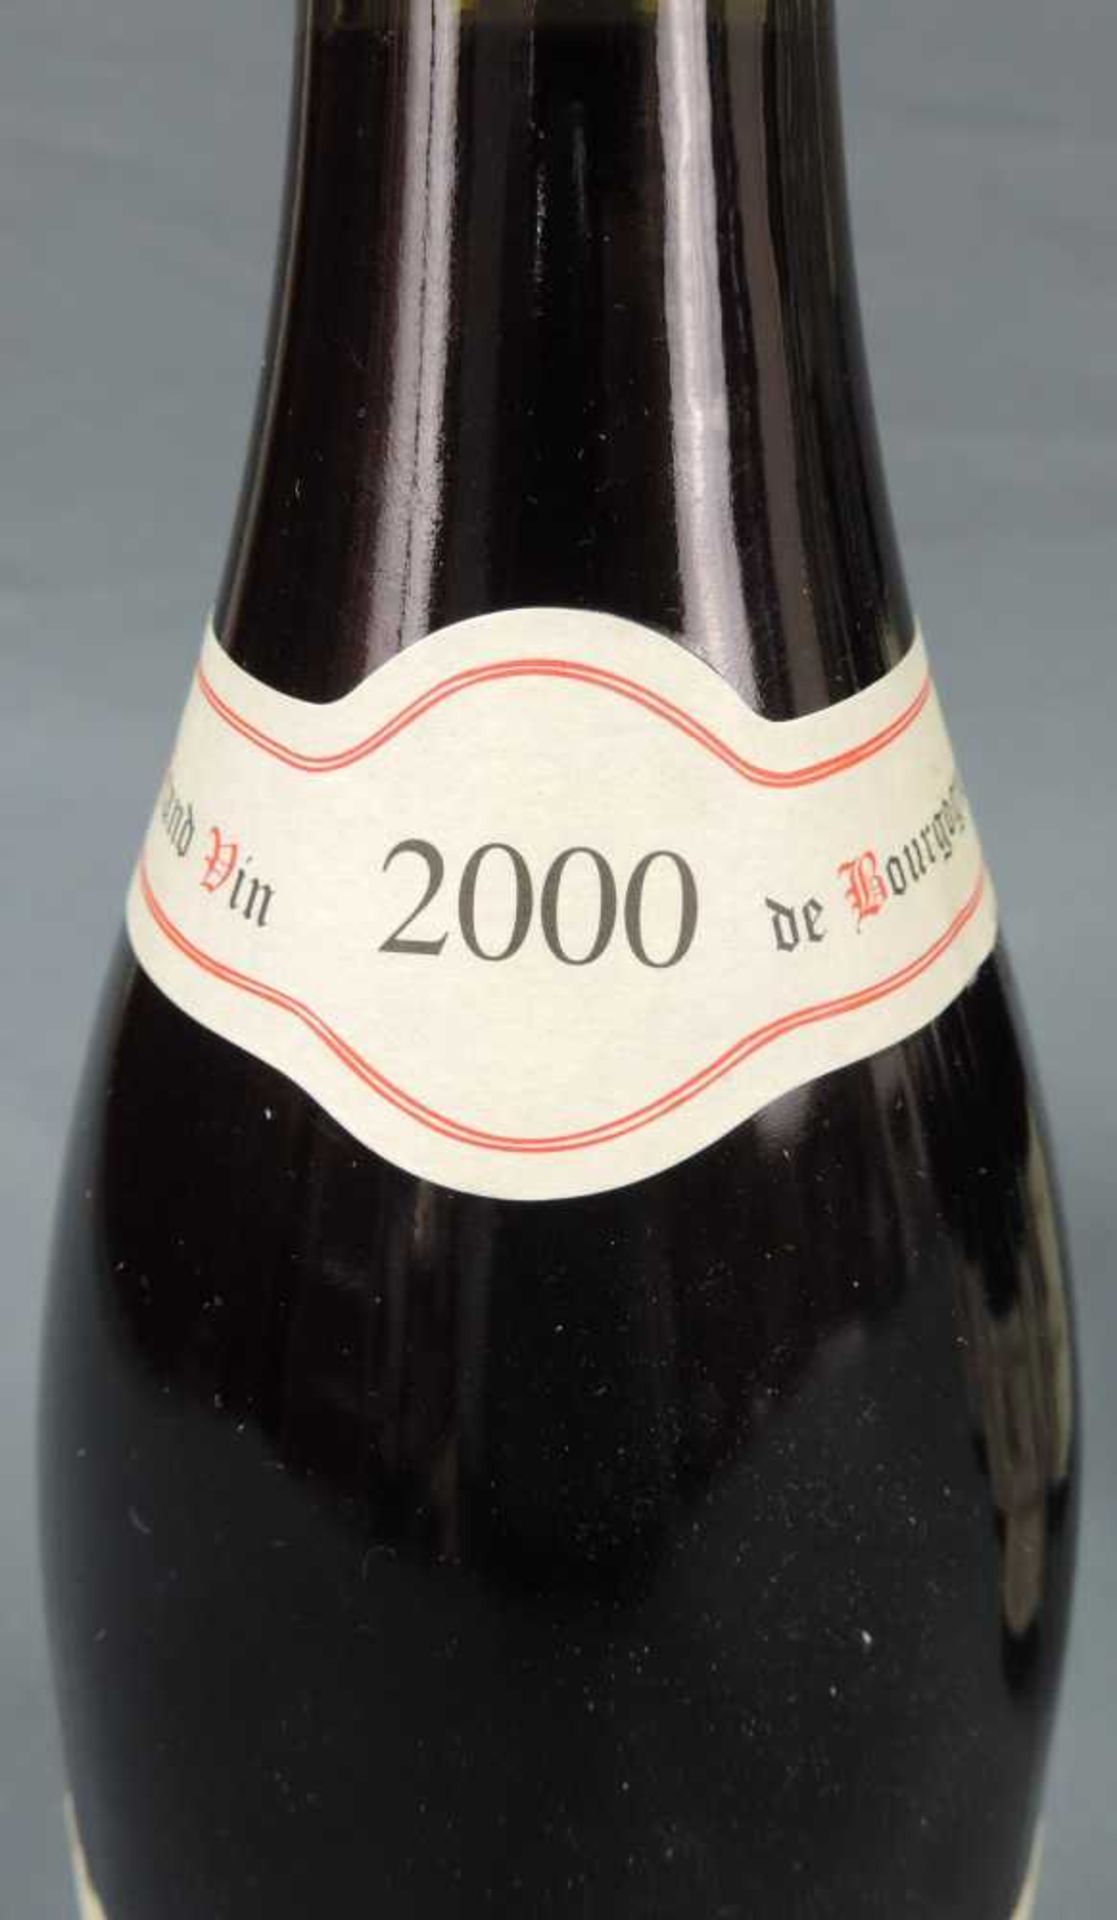 2000 Domaine Prieur - Brunet, Satenay Comme Premier Cru, France. 8 Flaschen, 750 ml, Alc., 13,5% - Bild 4 aus 6